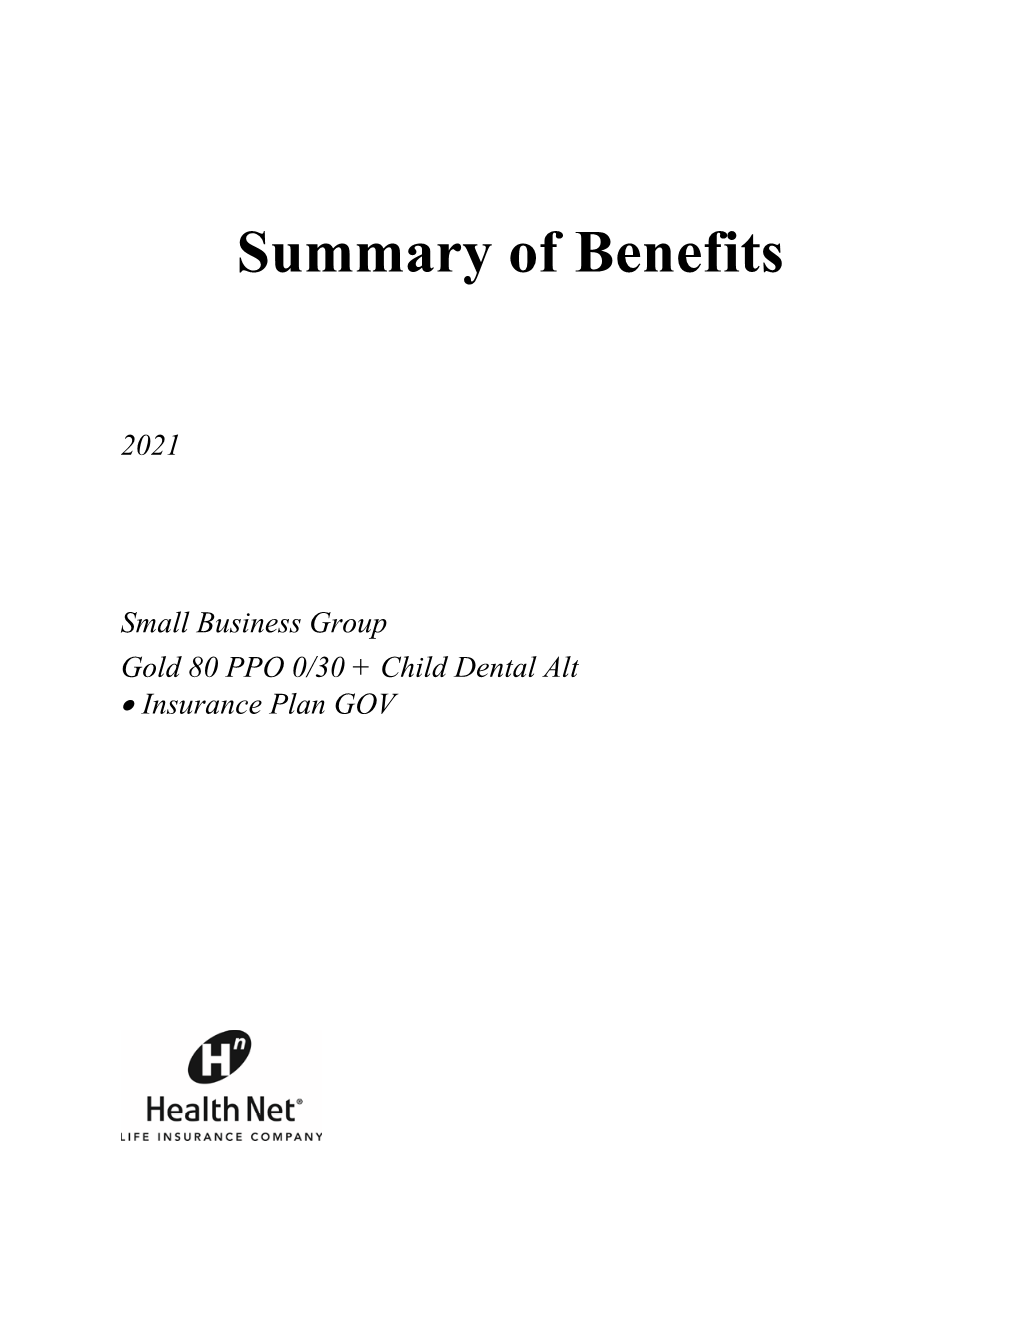 2021 Summary of Benefits